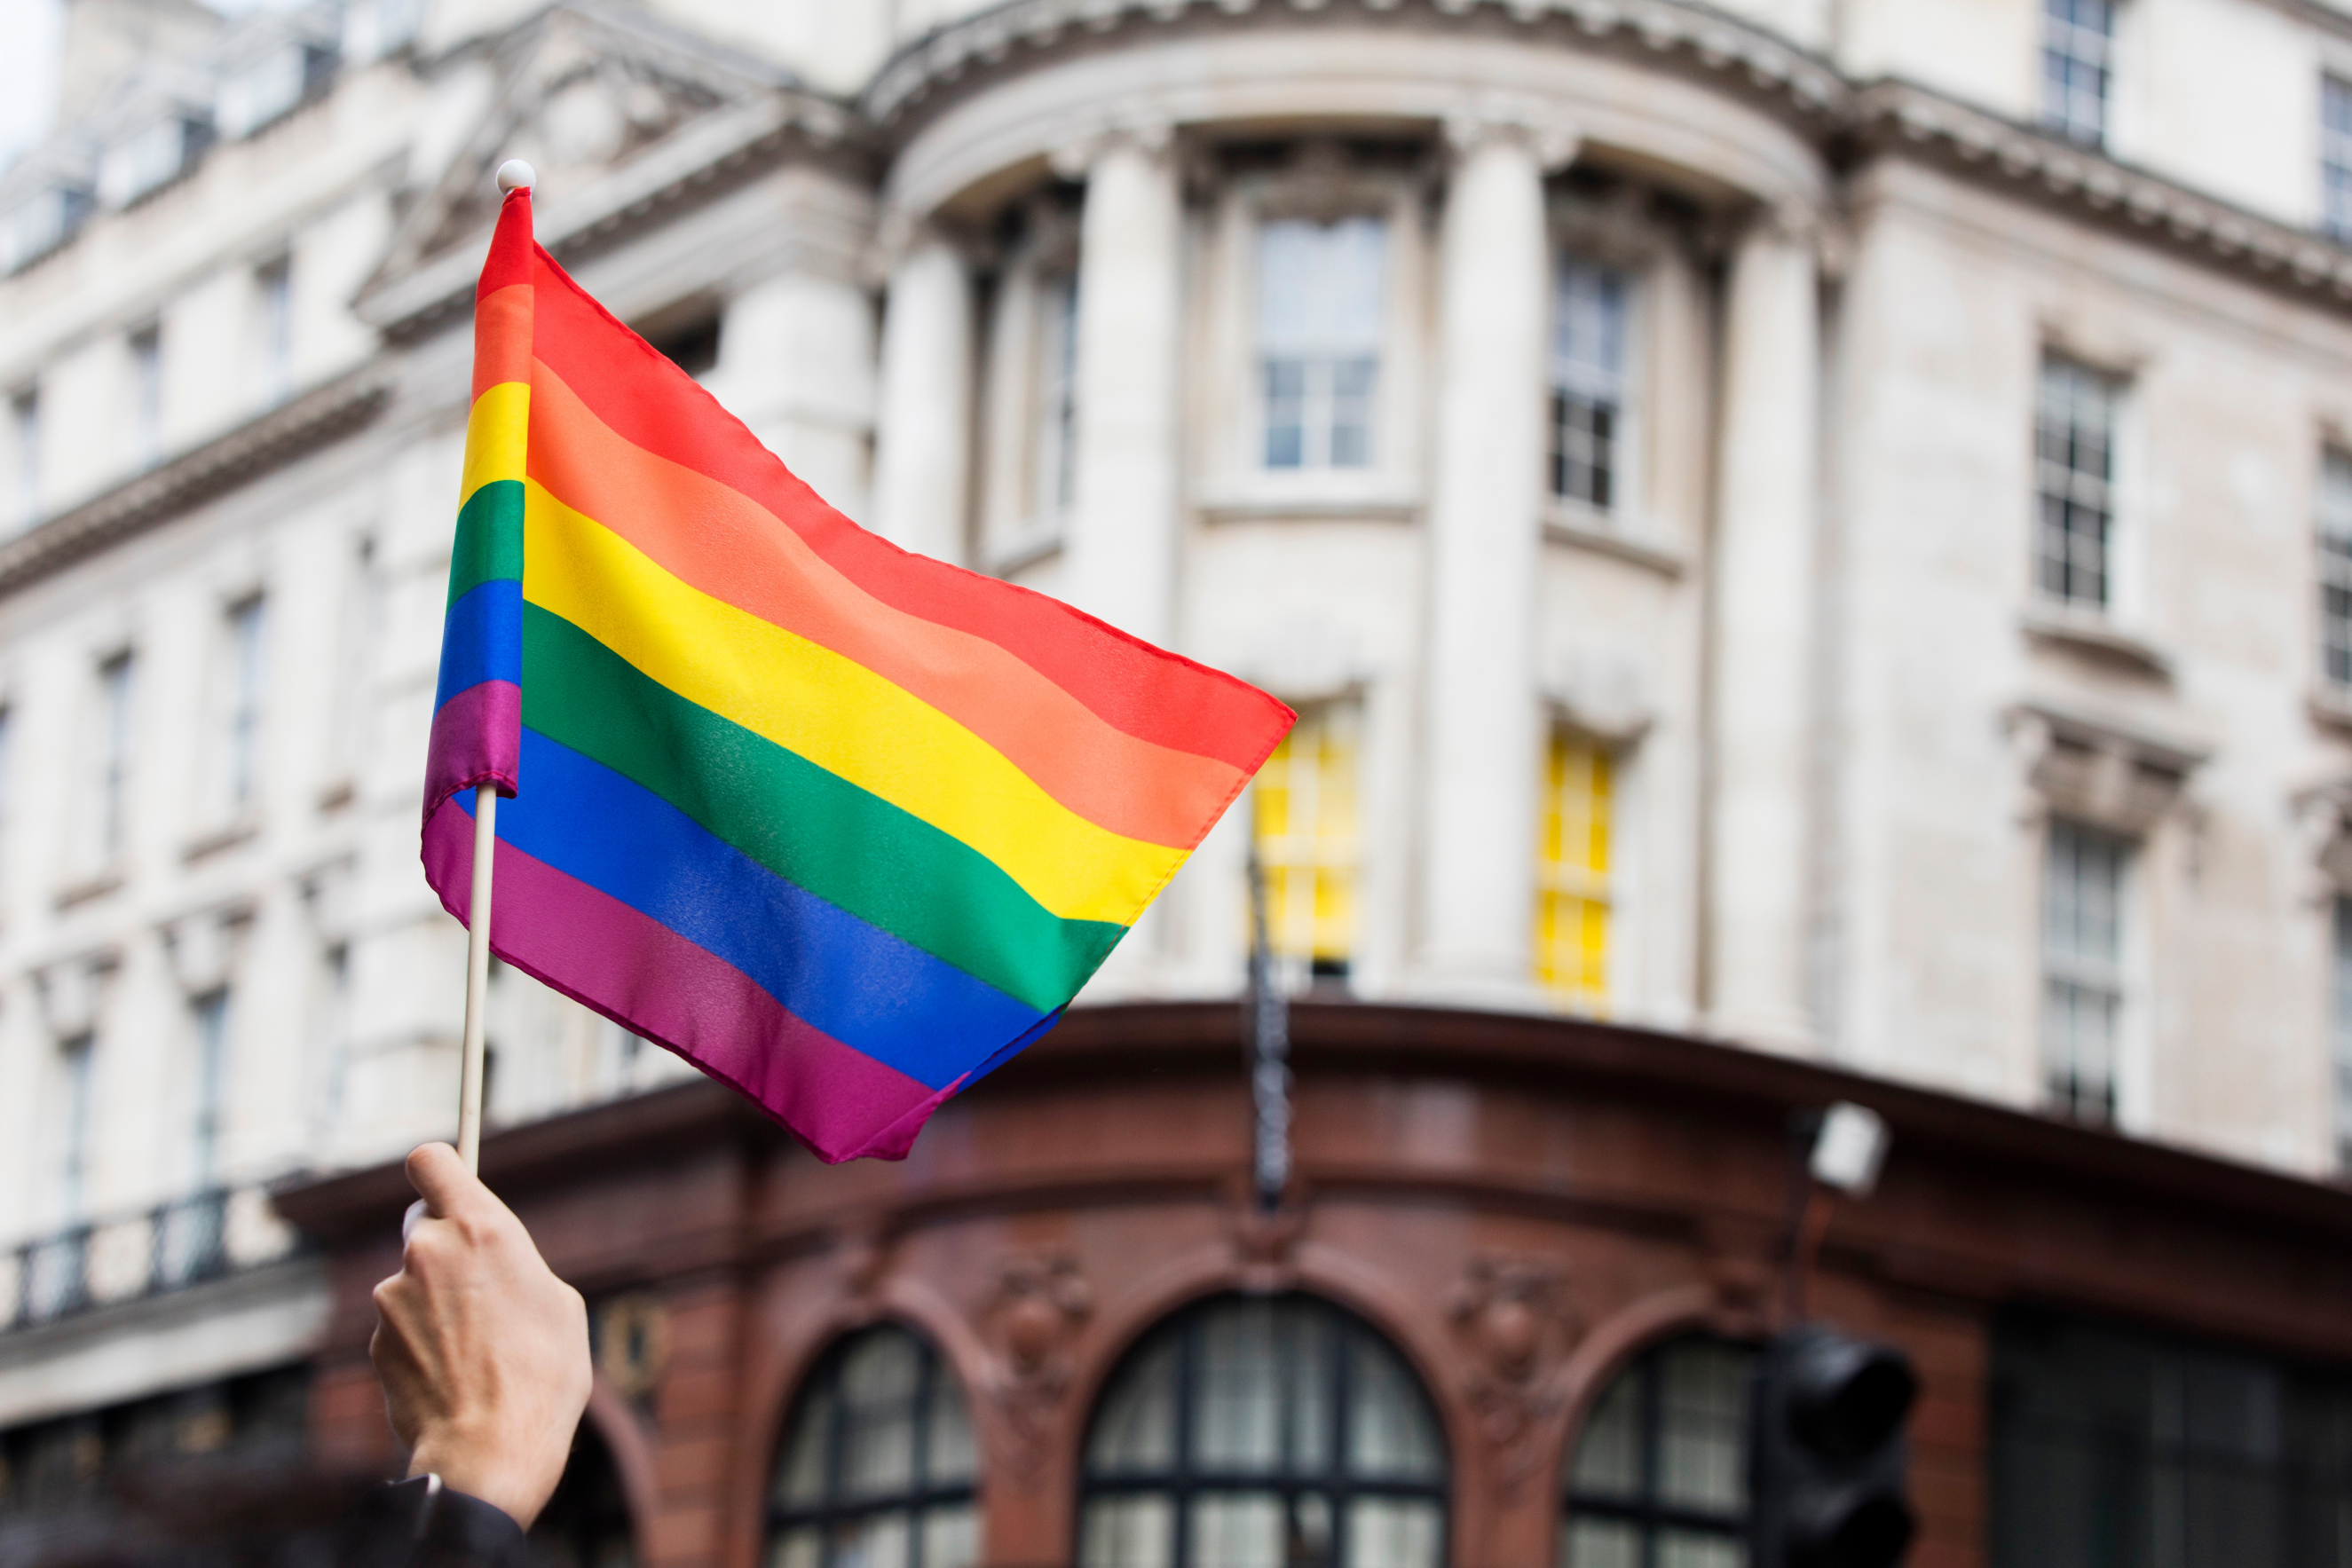 LGBTQ Rainbow flag waved at a r